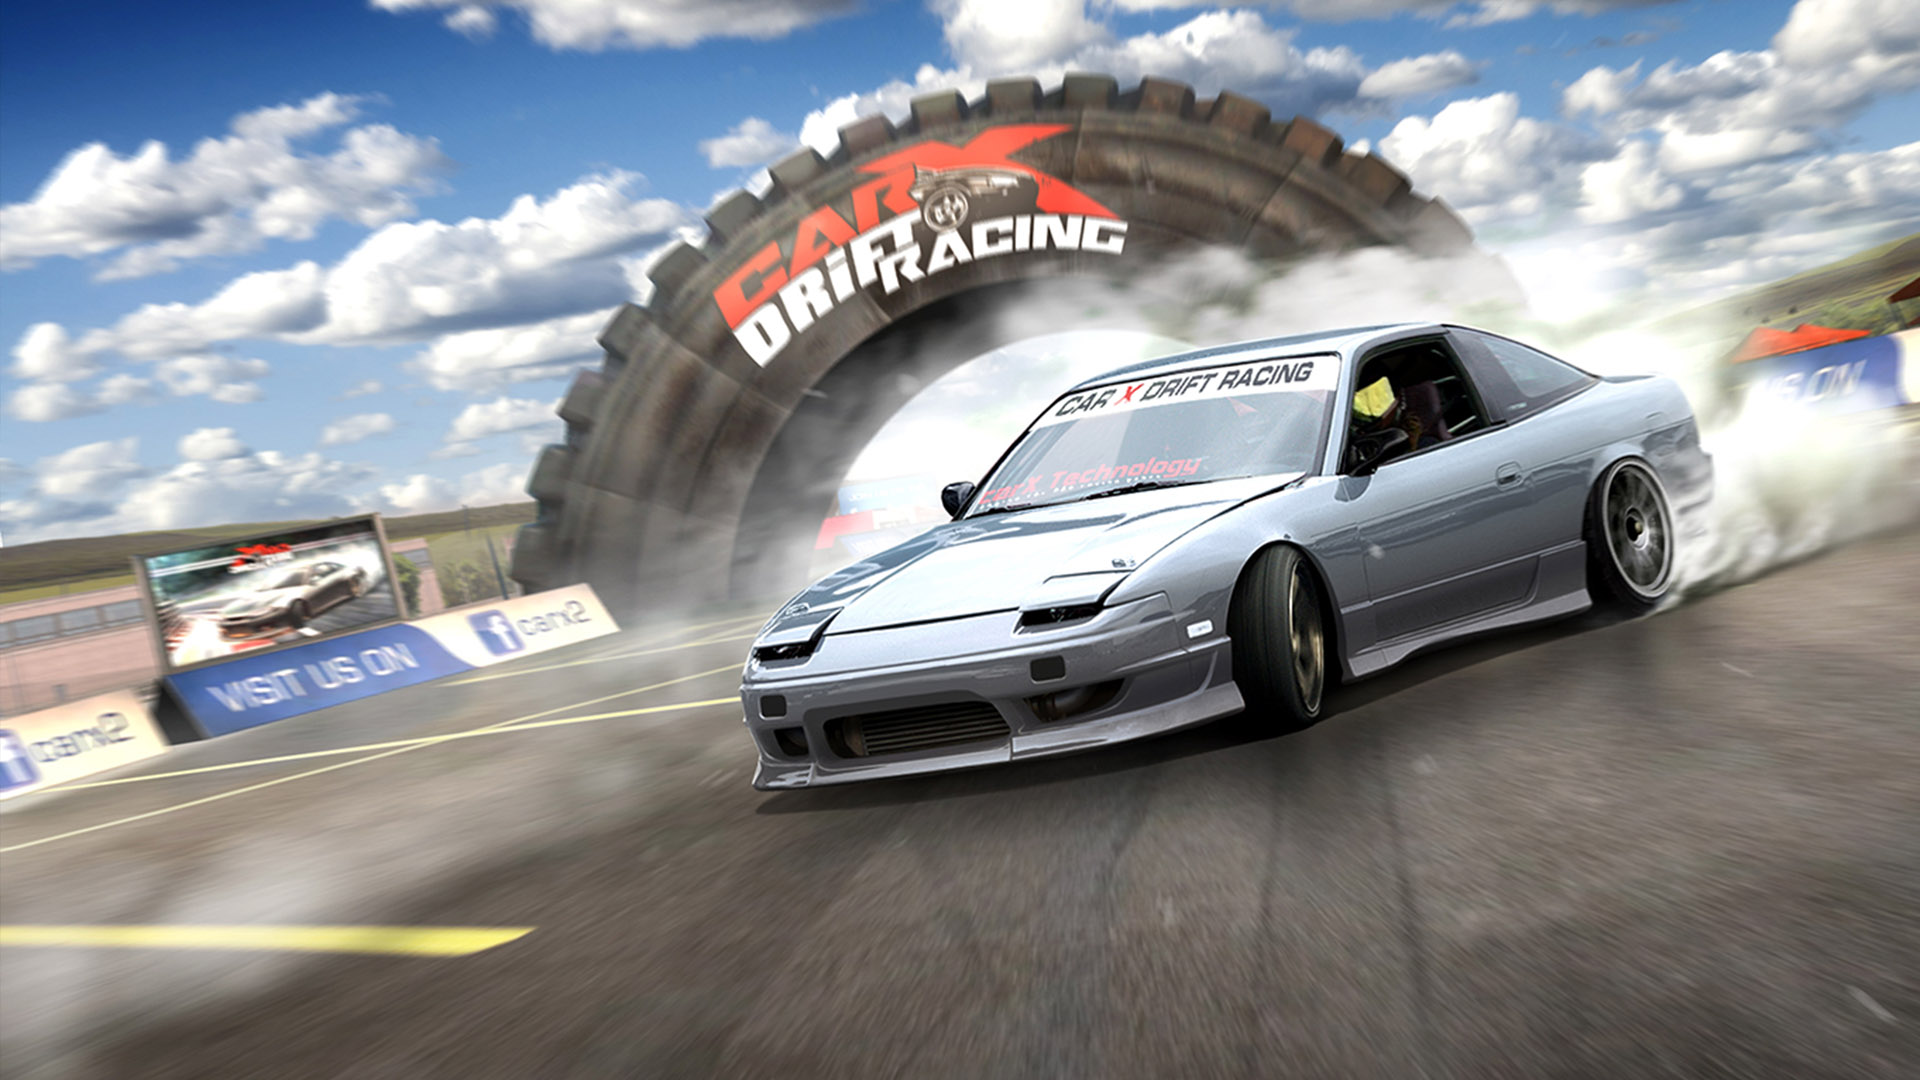 CarX Drift Racing Online - Power Drift on Steam